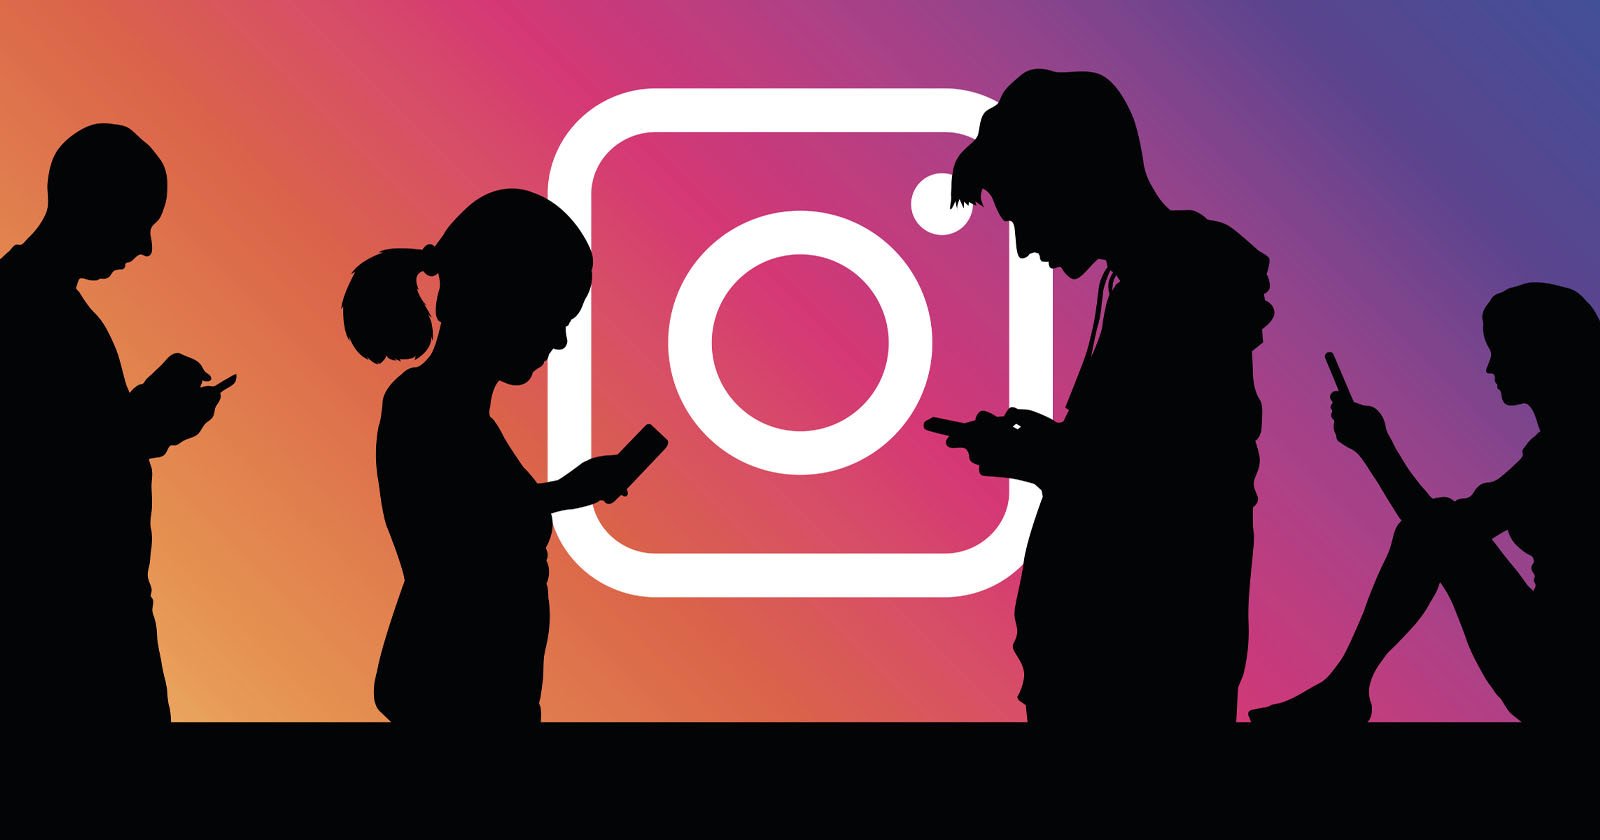  instagram tweaks its algorithm value original content more 